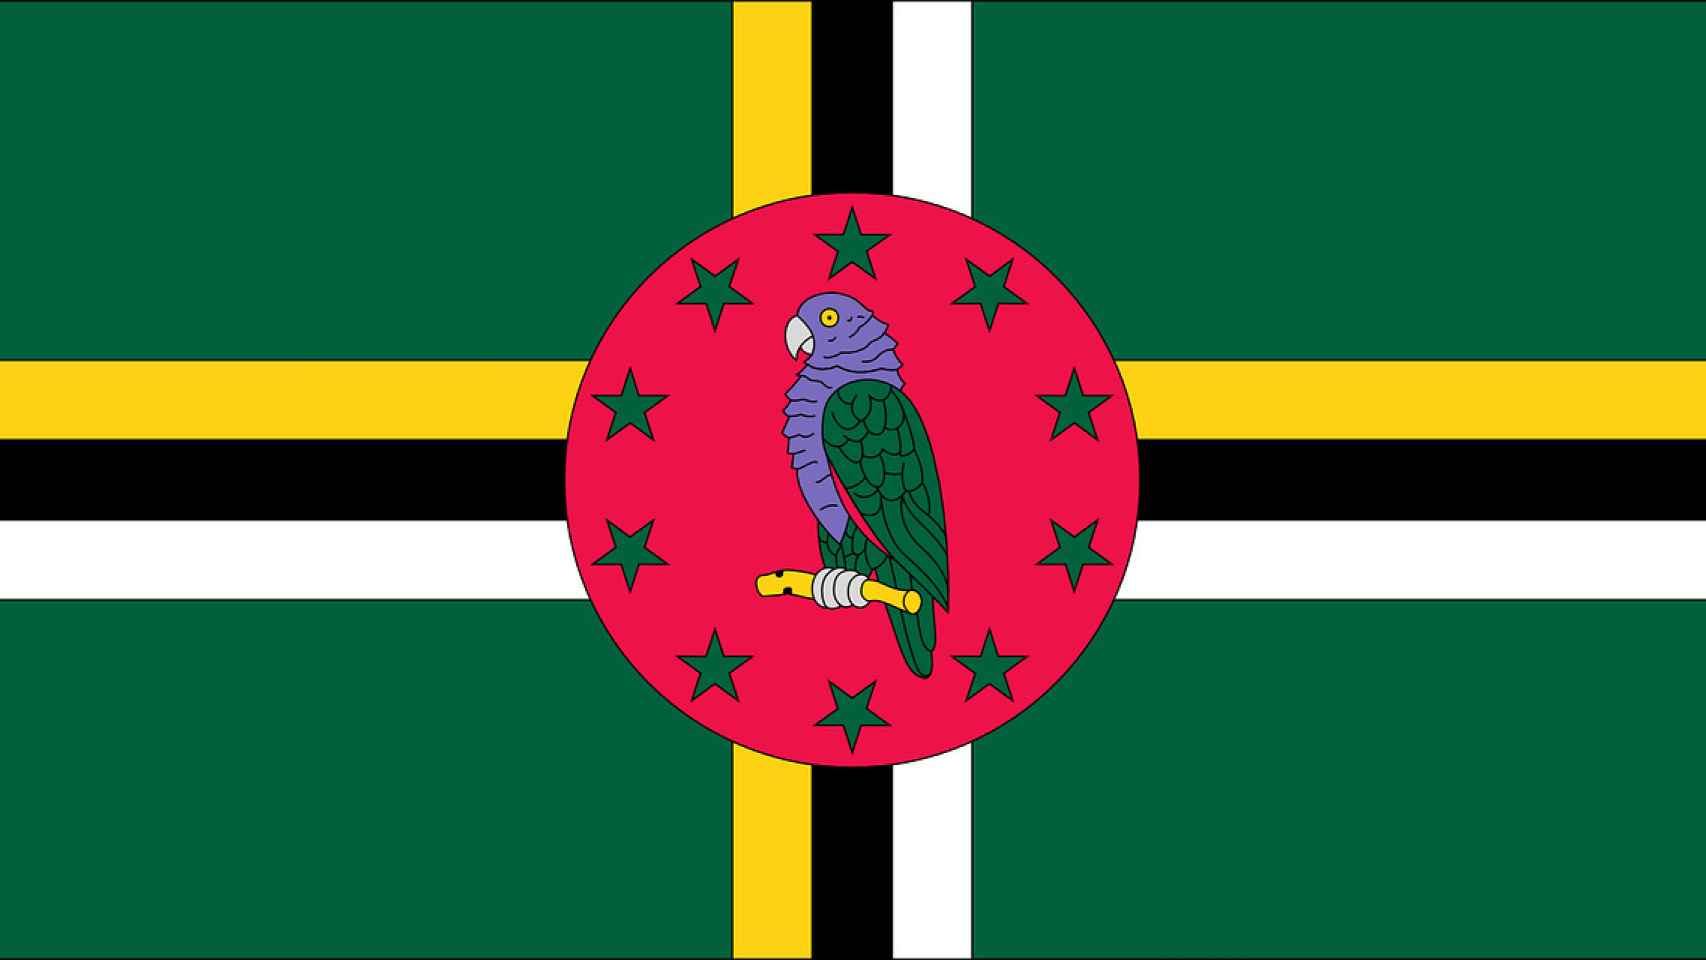 Bandera Dominica, isla del Caribe